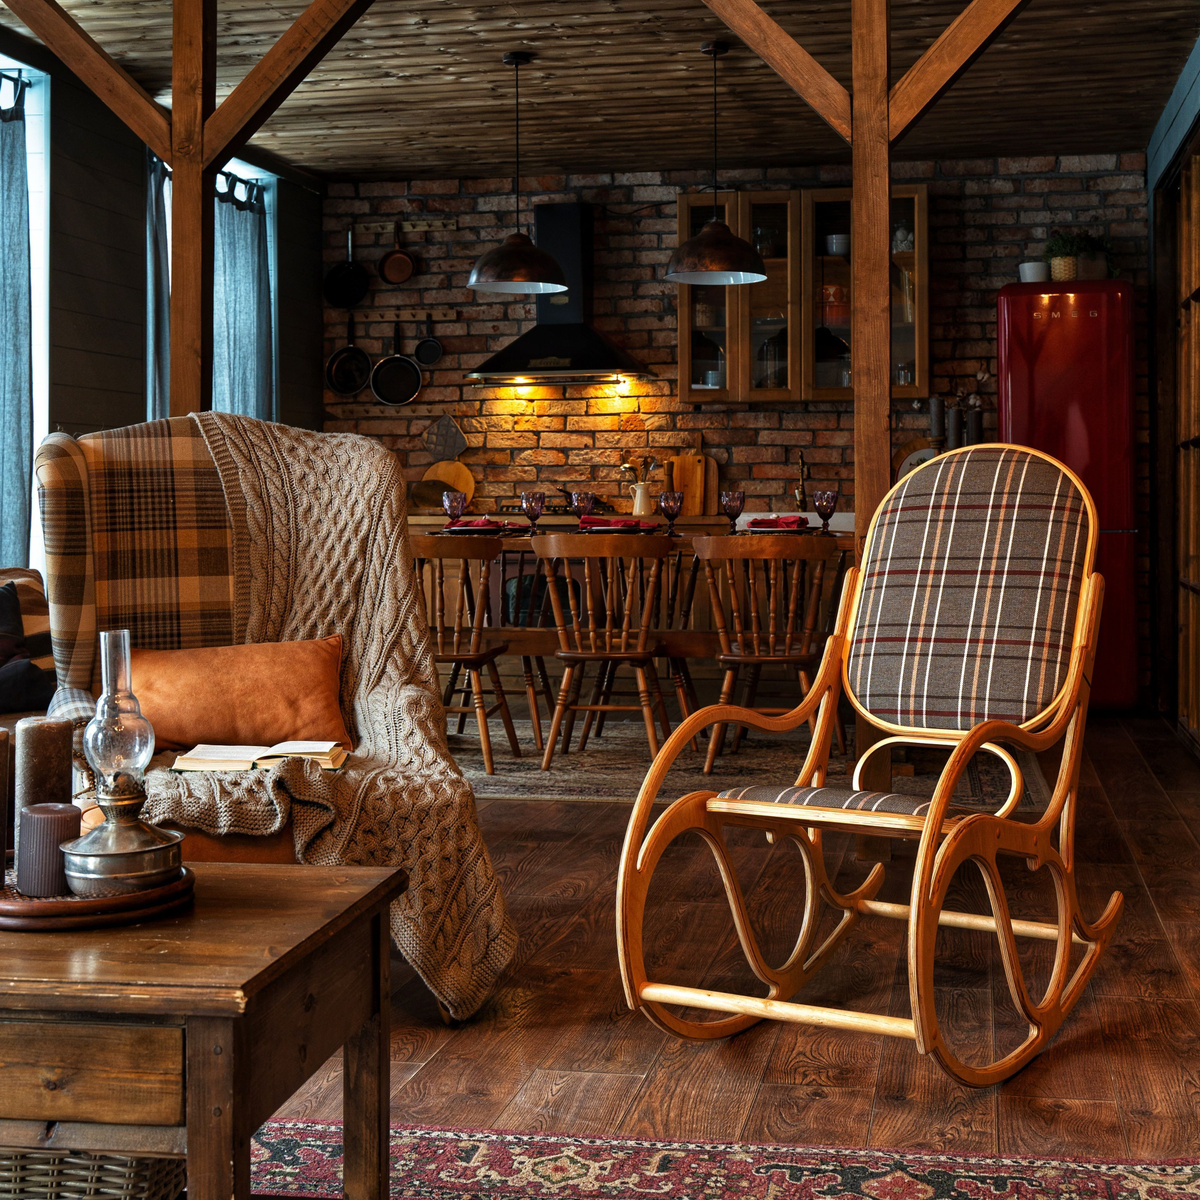 Стильное деревянное кресло, с выраженной текстурой дерева, в сочетании с клетчатой обивкой из рогожки. Украсит интерьер вашего дома, подчеркнув его уникальность. Классический дизайн, натуральные материалы и особый комфорт!